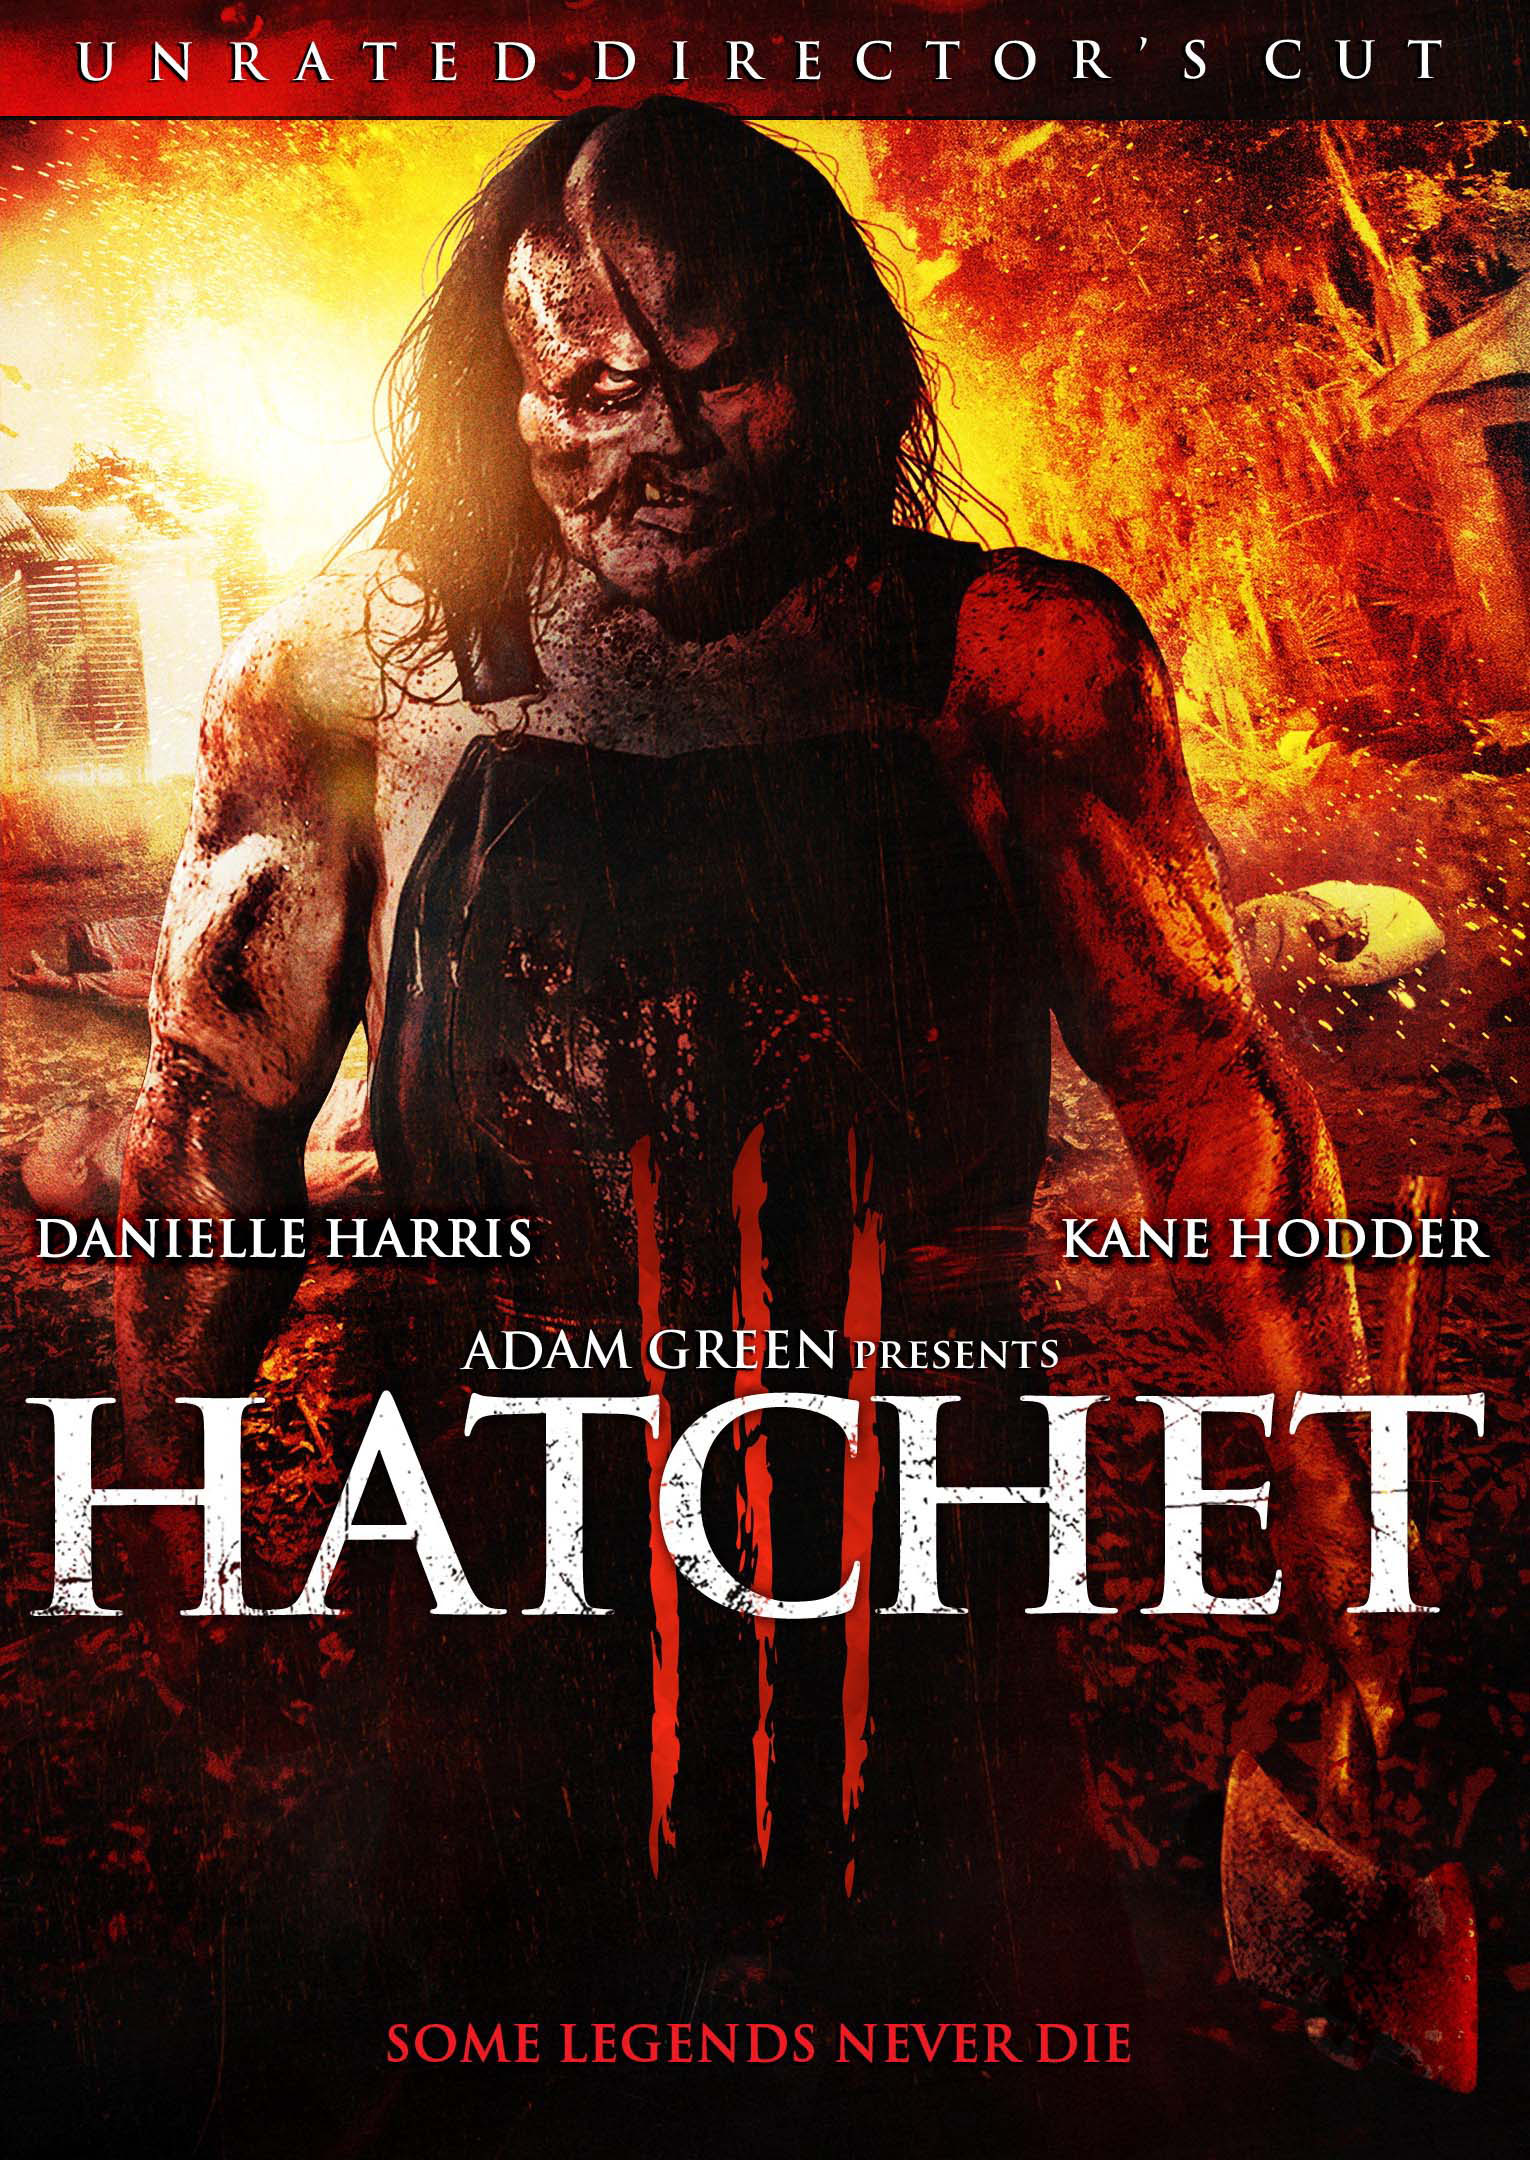 Hatchet III [Unrated] [Director's Cut] [DVD] [2013]